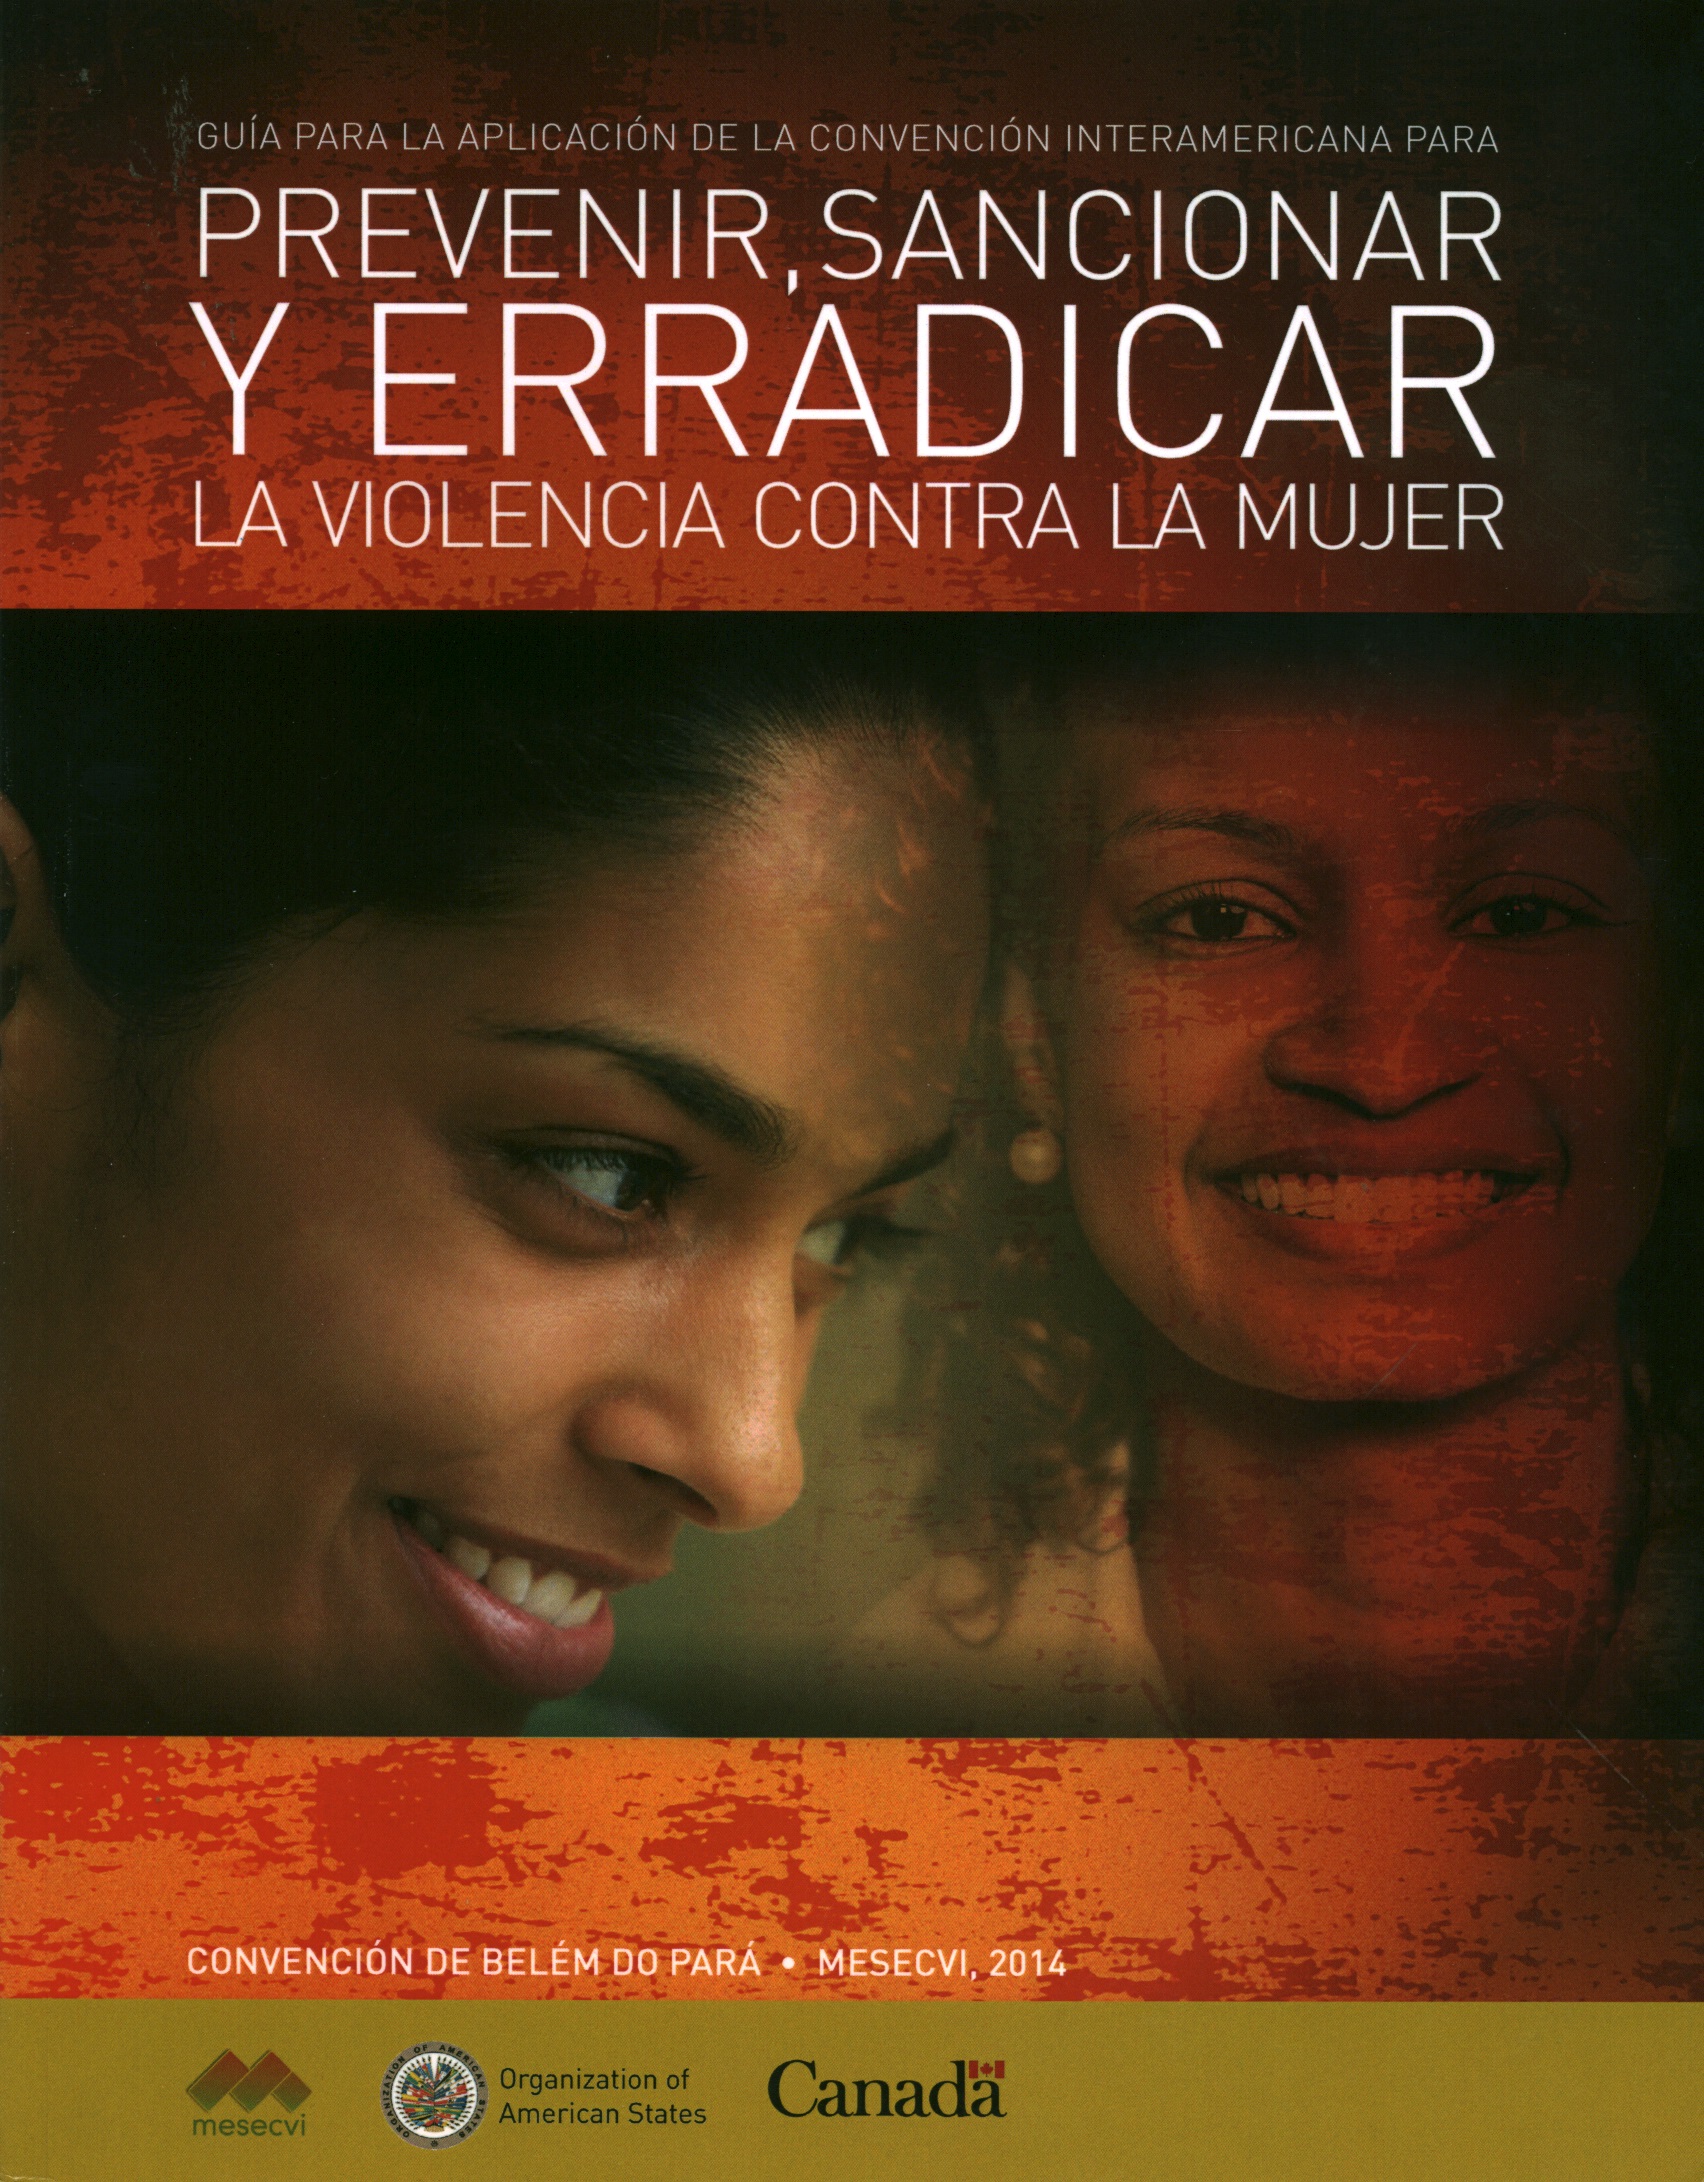 Guía para la aplicación de la convención interamericana para prevenir, sancionar y erradicar la violencia contra la mujer